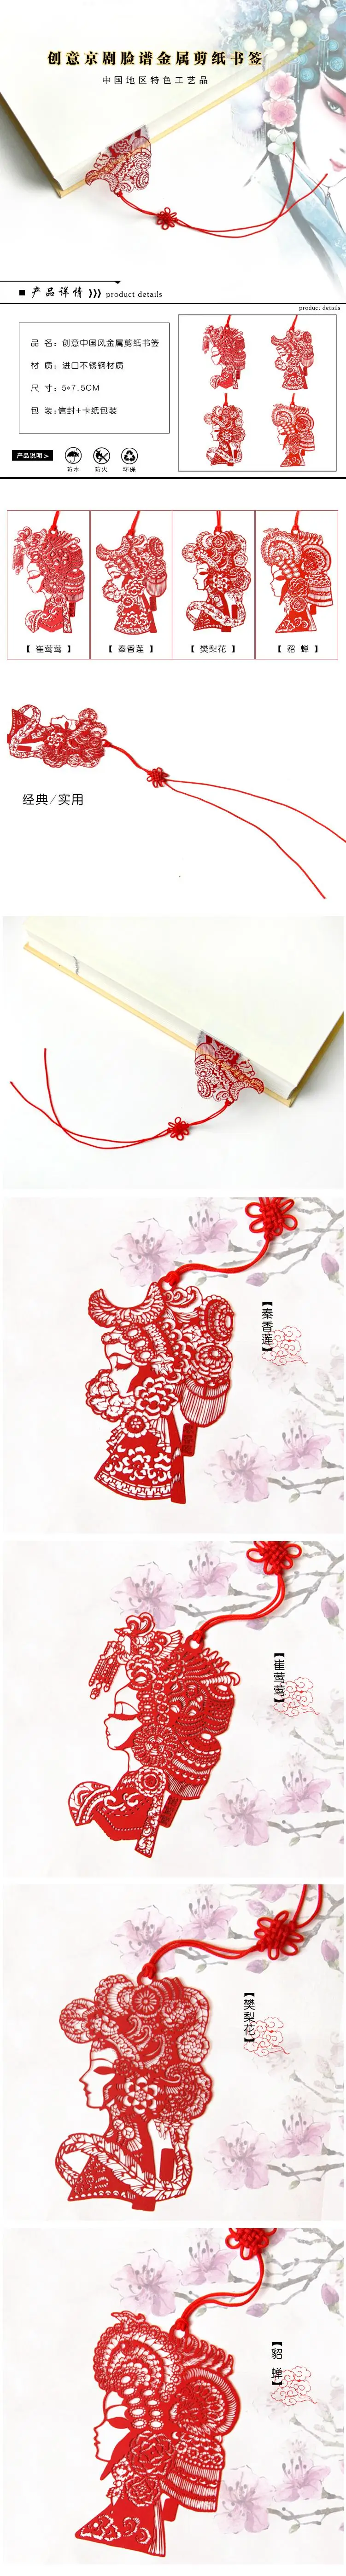 4 шт./компл. металлическая для бумаги вырезанные Закладки закладки Китайский классические закладки творческих и личность канцелярские